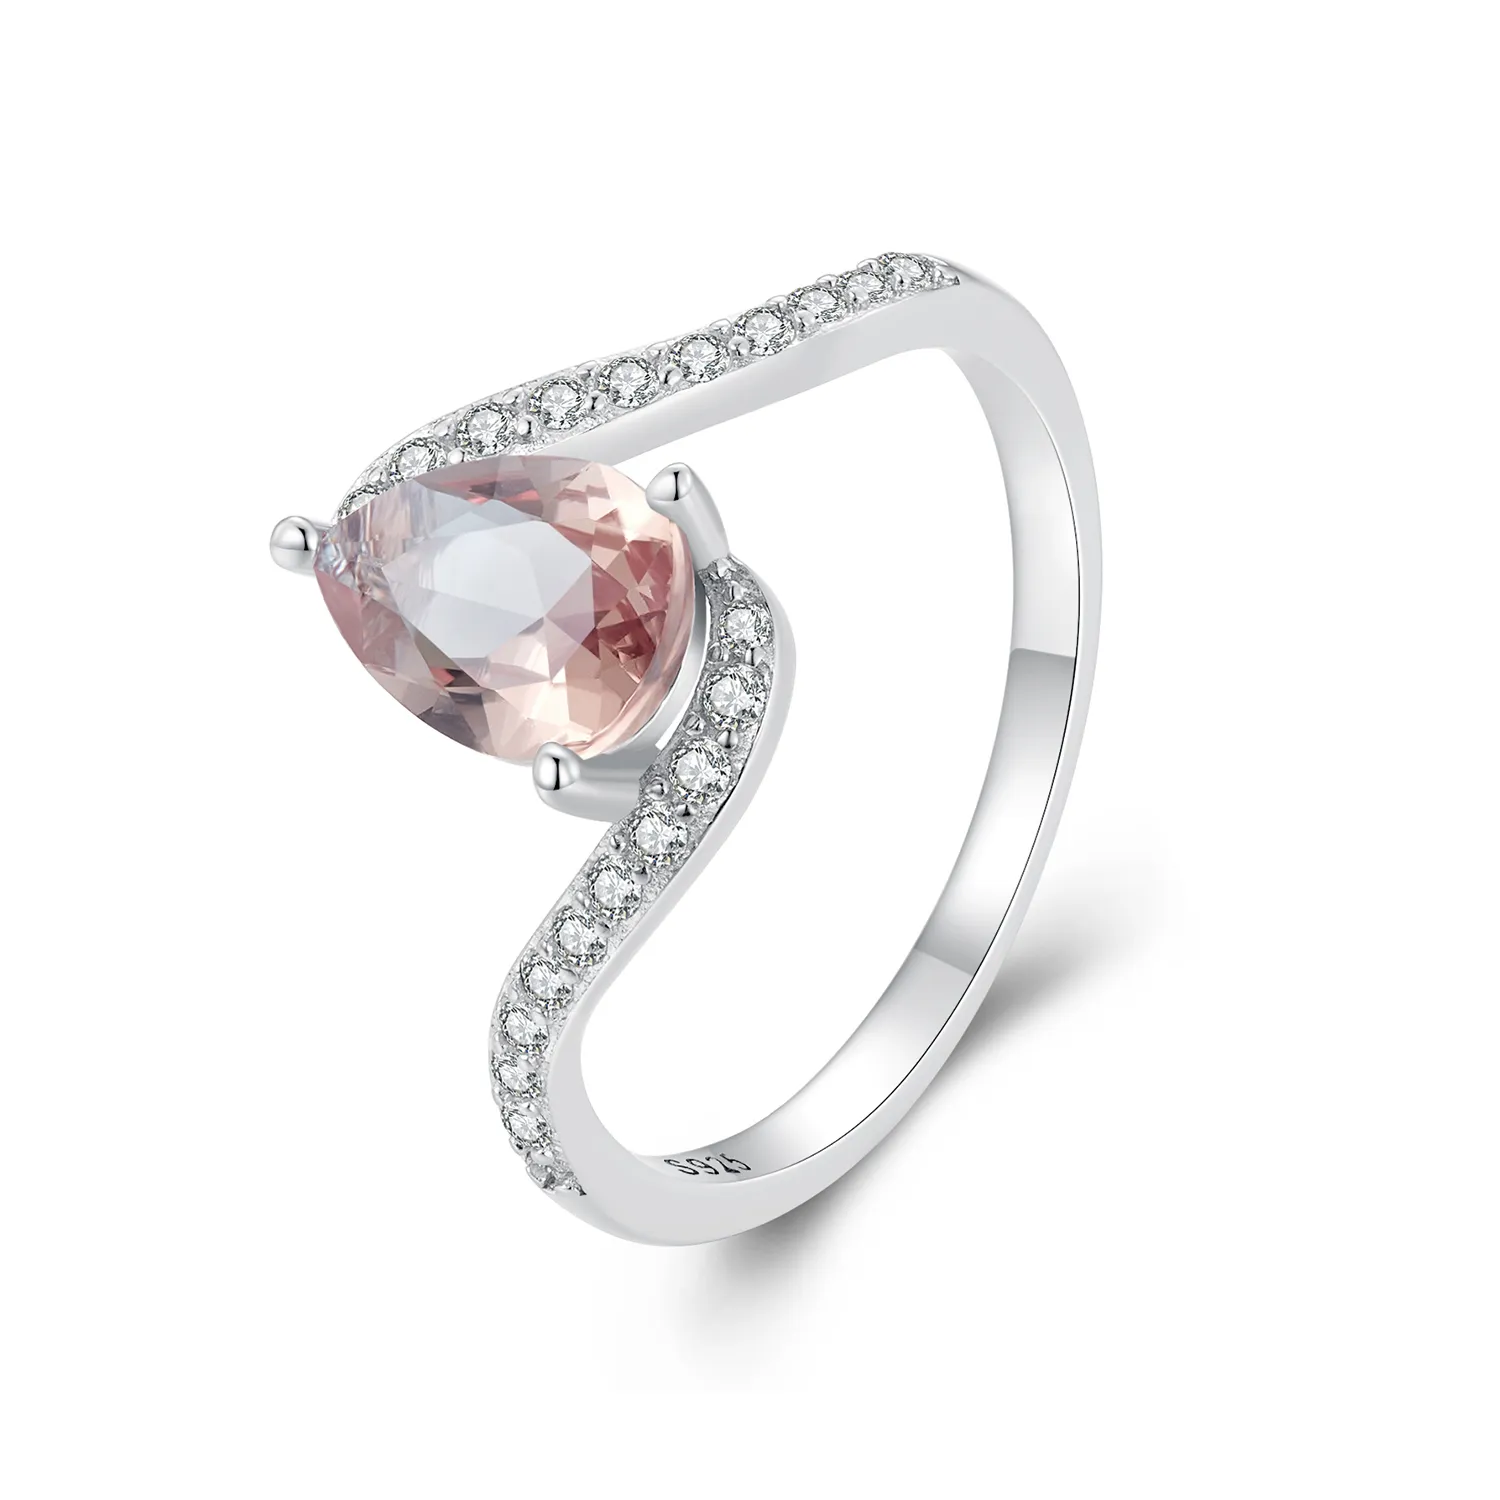 Inel cu piatră colorată în formă de pară în stilul Pandora - BSR480